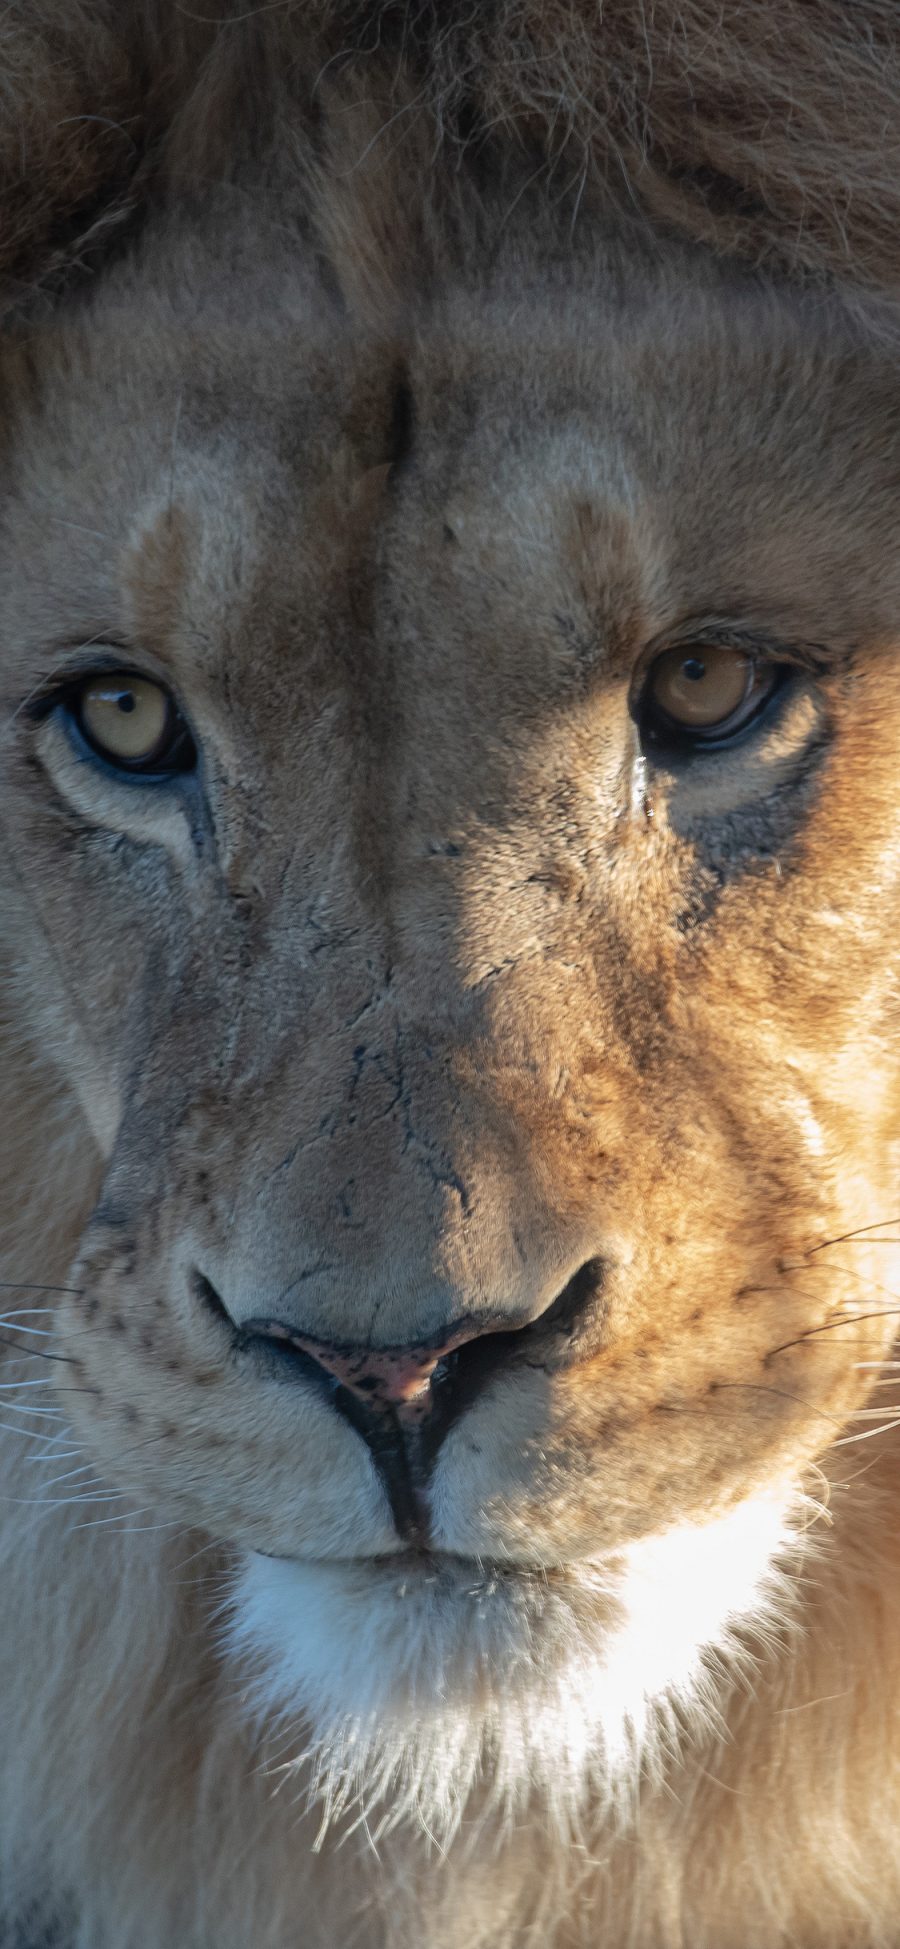 [2436×1125]狮子 猛兽 凶猛 毛发 森林之王 苹果手机壁纸图片